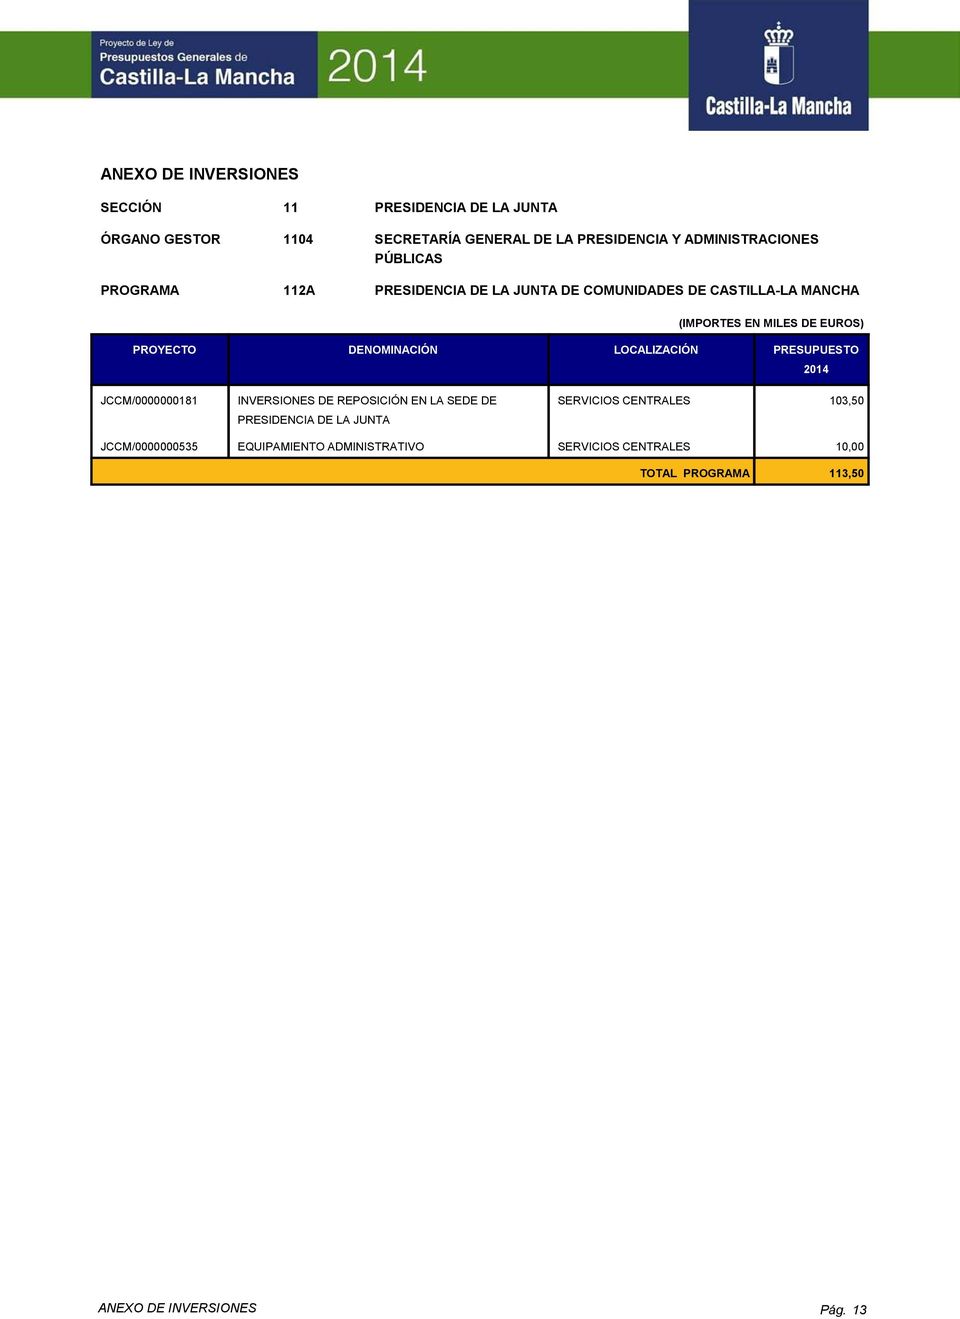 JCCM/0000000181 INVERSIONES DE REPOSICIÓN EN LA SEDE DE PRESIDENCIA DE LA JUNTA SERVICIOS CENTRALES